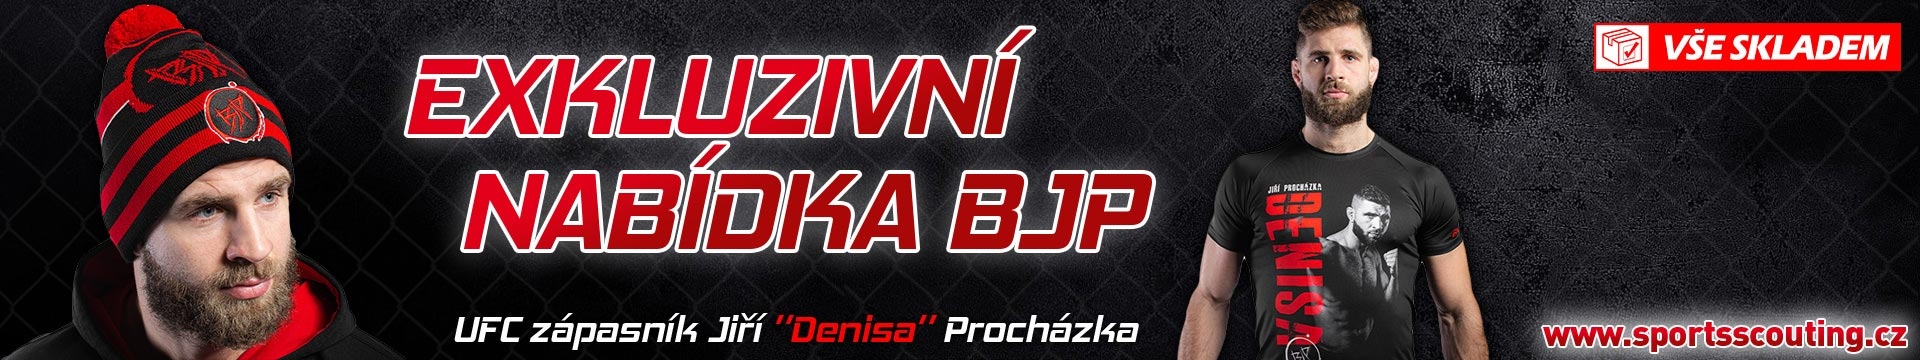 BJP Jiří Denisa Procházka